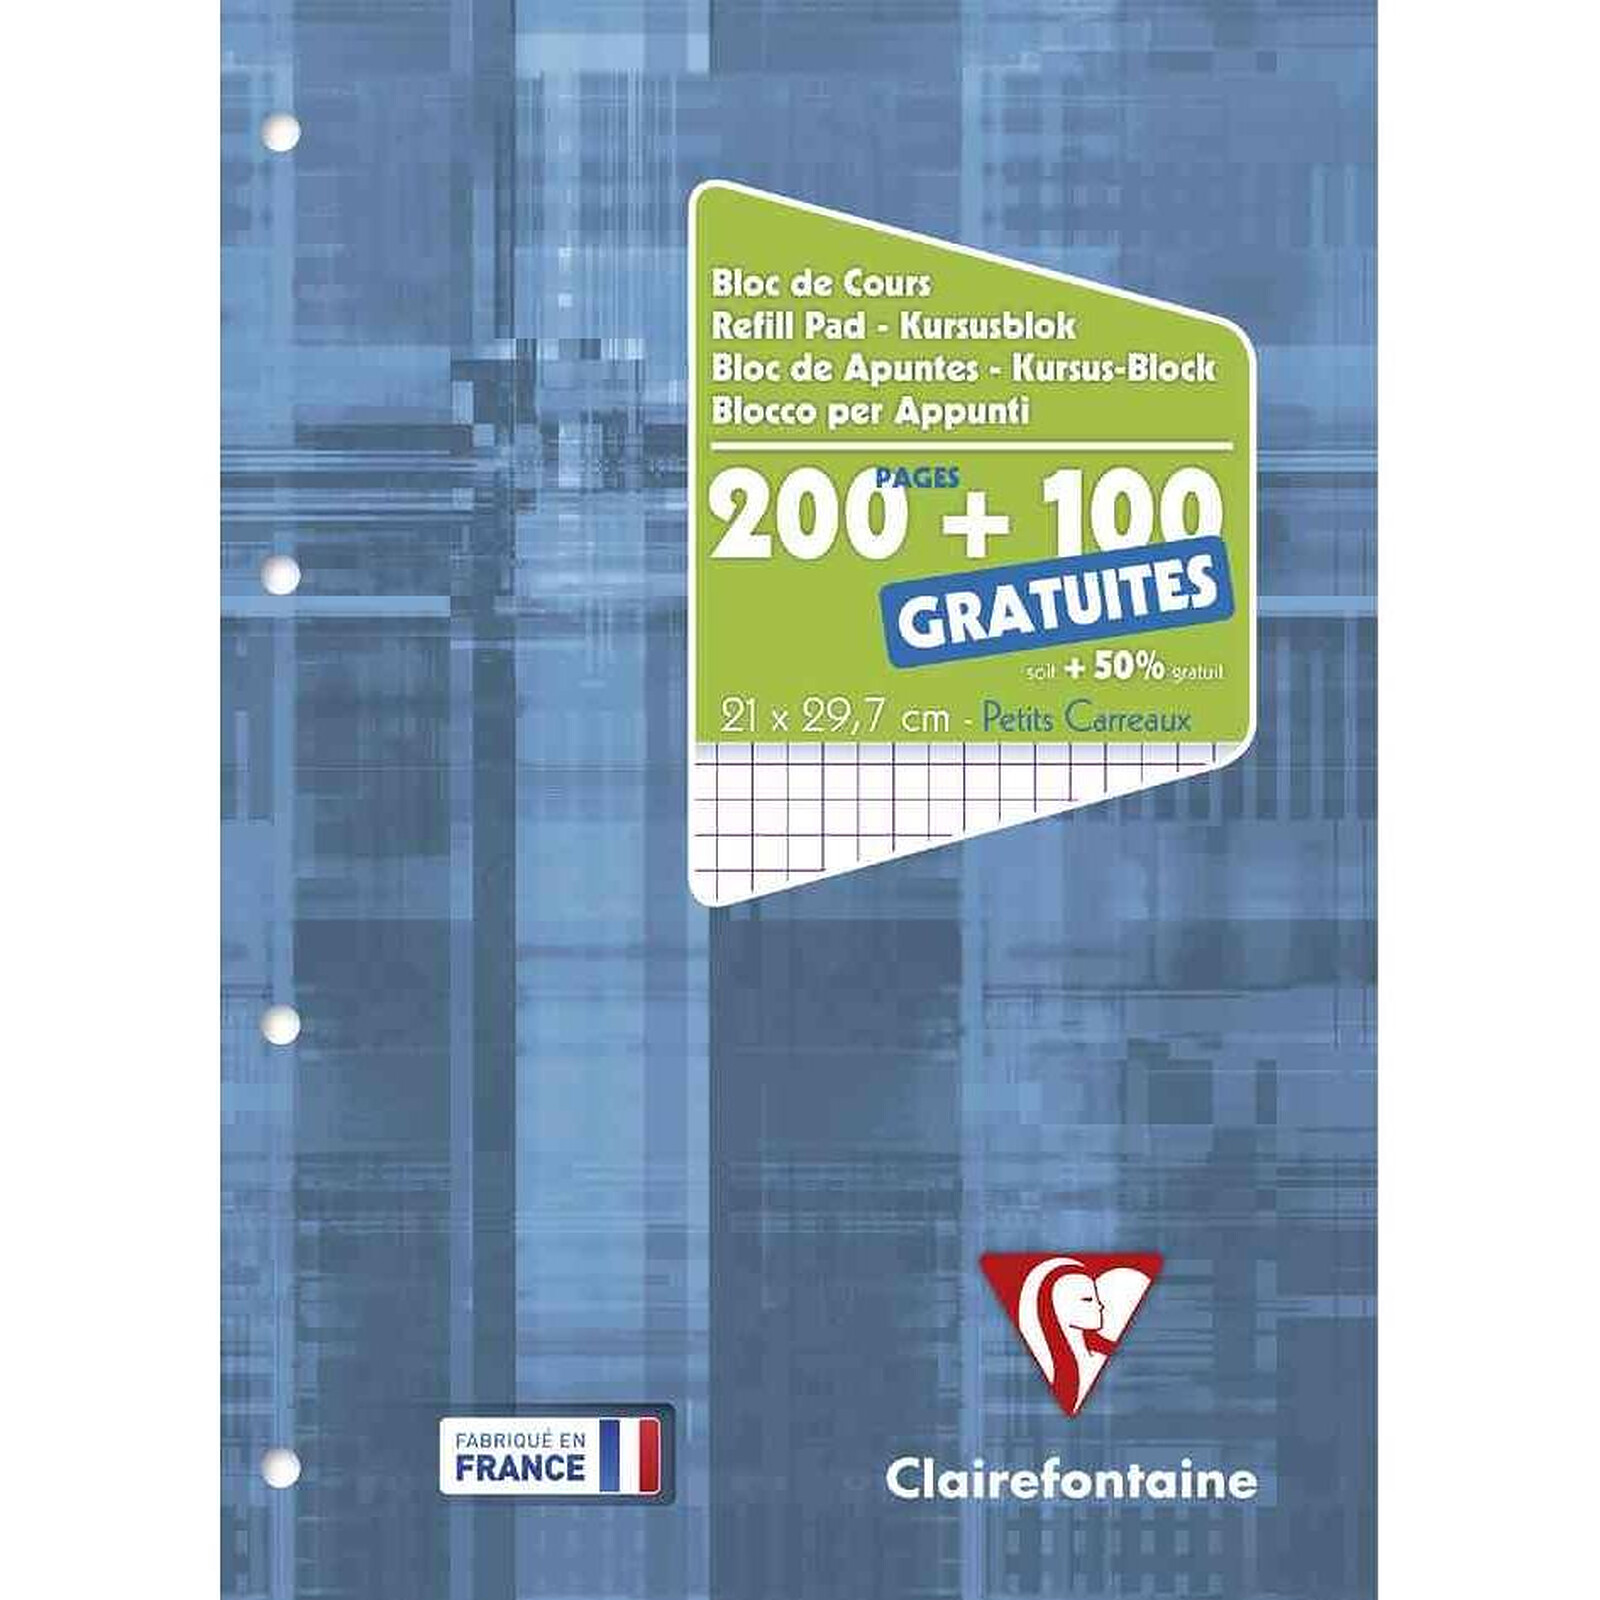 Clairefontaine Bloc De Cours 21x29 7cm 200 100 Pages Gratuites 90g Q5x5 Perforé 4 Trous Bloc